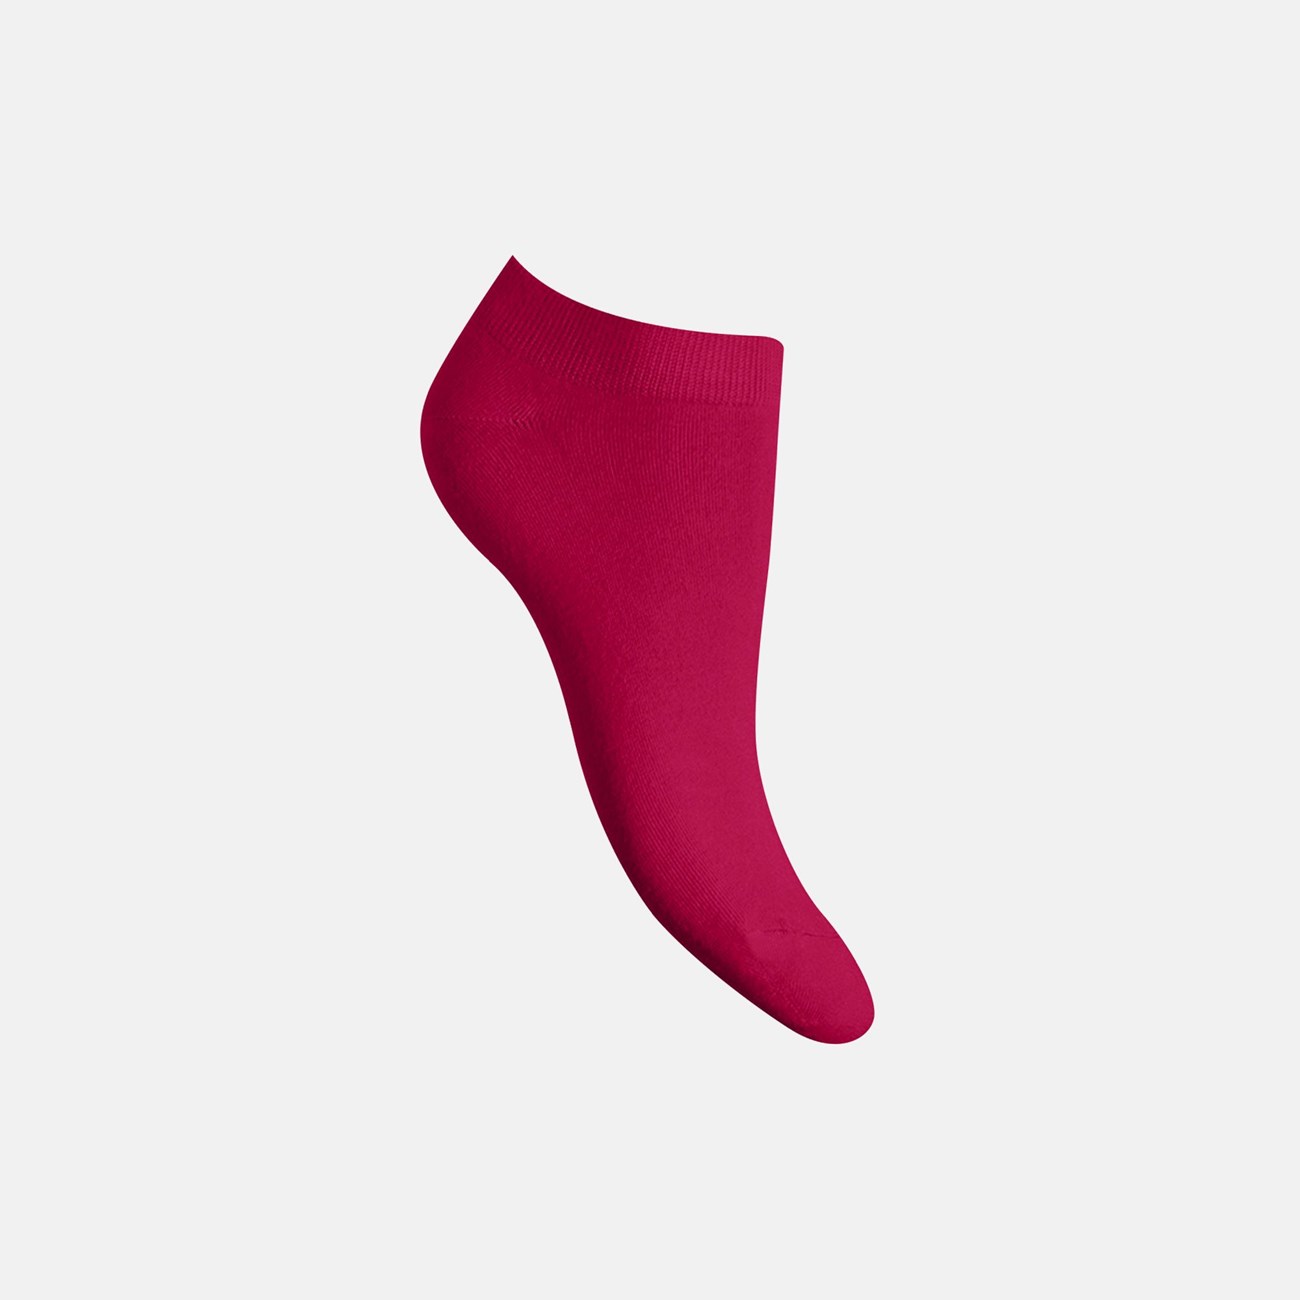  Γυναικείες Κάλτσες Bamboo W332-51 - The Athlete's Foot